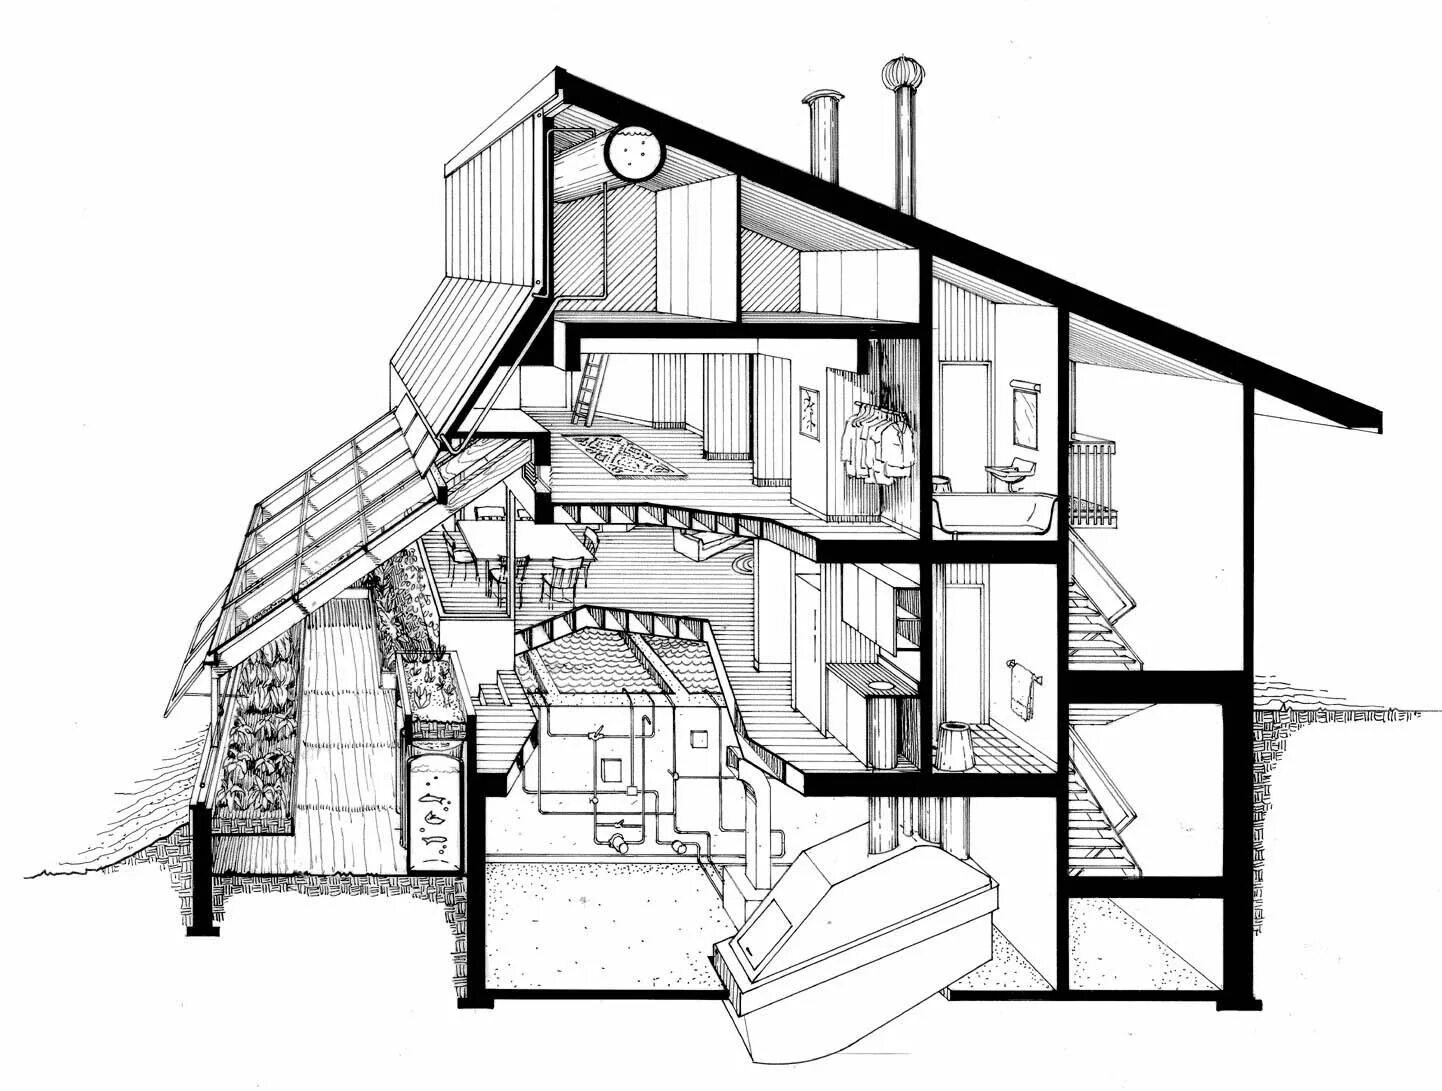 Архитектурная планировка. Архитектурные параметры экологичного жилища. Архитектурная планировка своего жилища. Планировки экологичных домов.